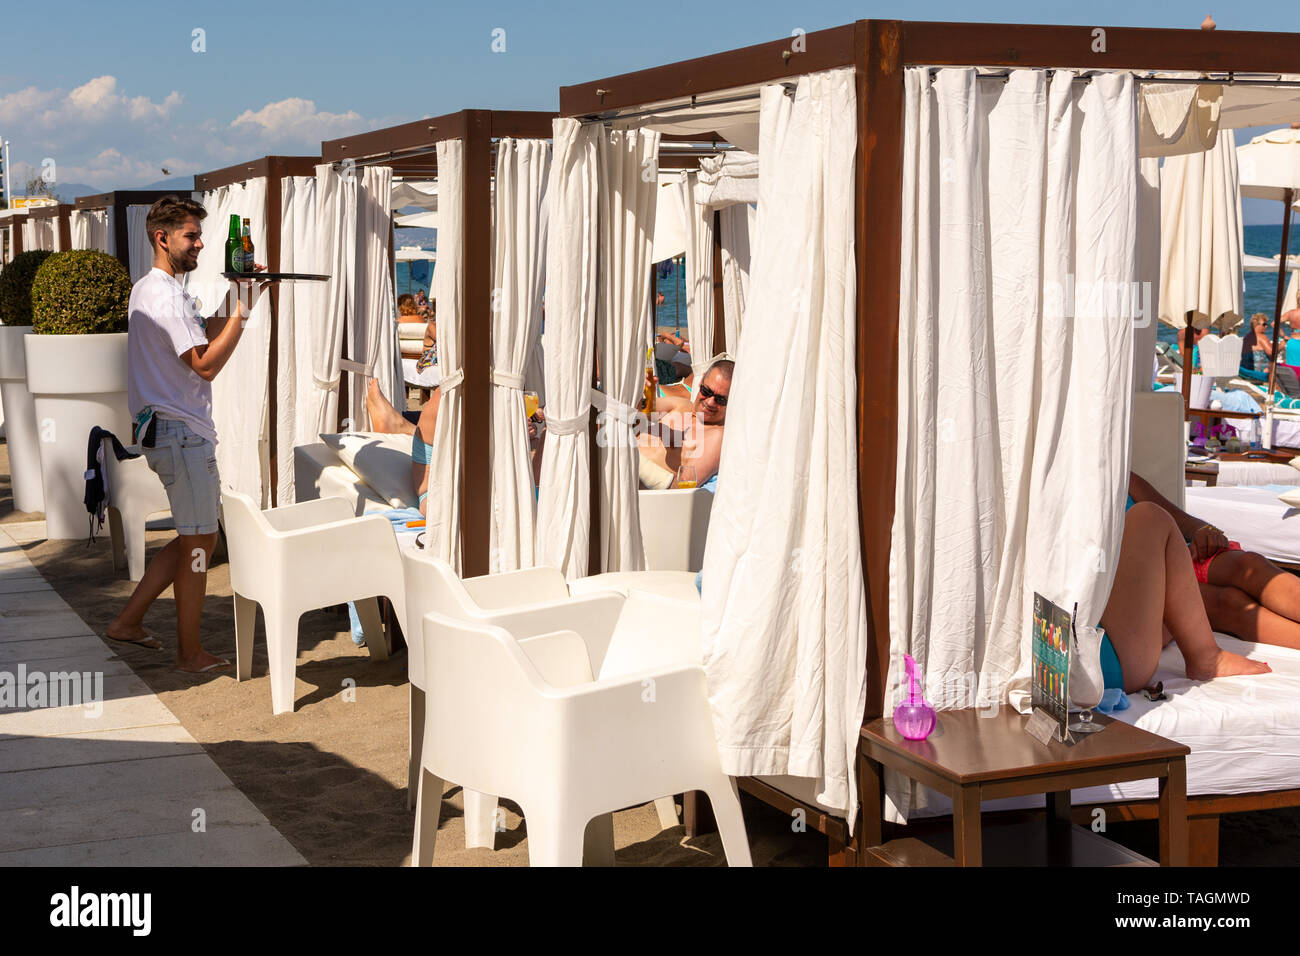 Garçon en blanc au service de clients sur blanc lit haut de gamme-comme des chaises longues sur la plage, Playa Miguel, La Carihuela, Torremolinos, Costa del Sol, Espagne Banque D'Images